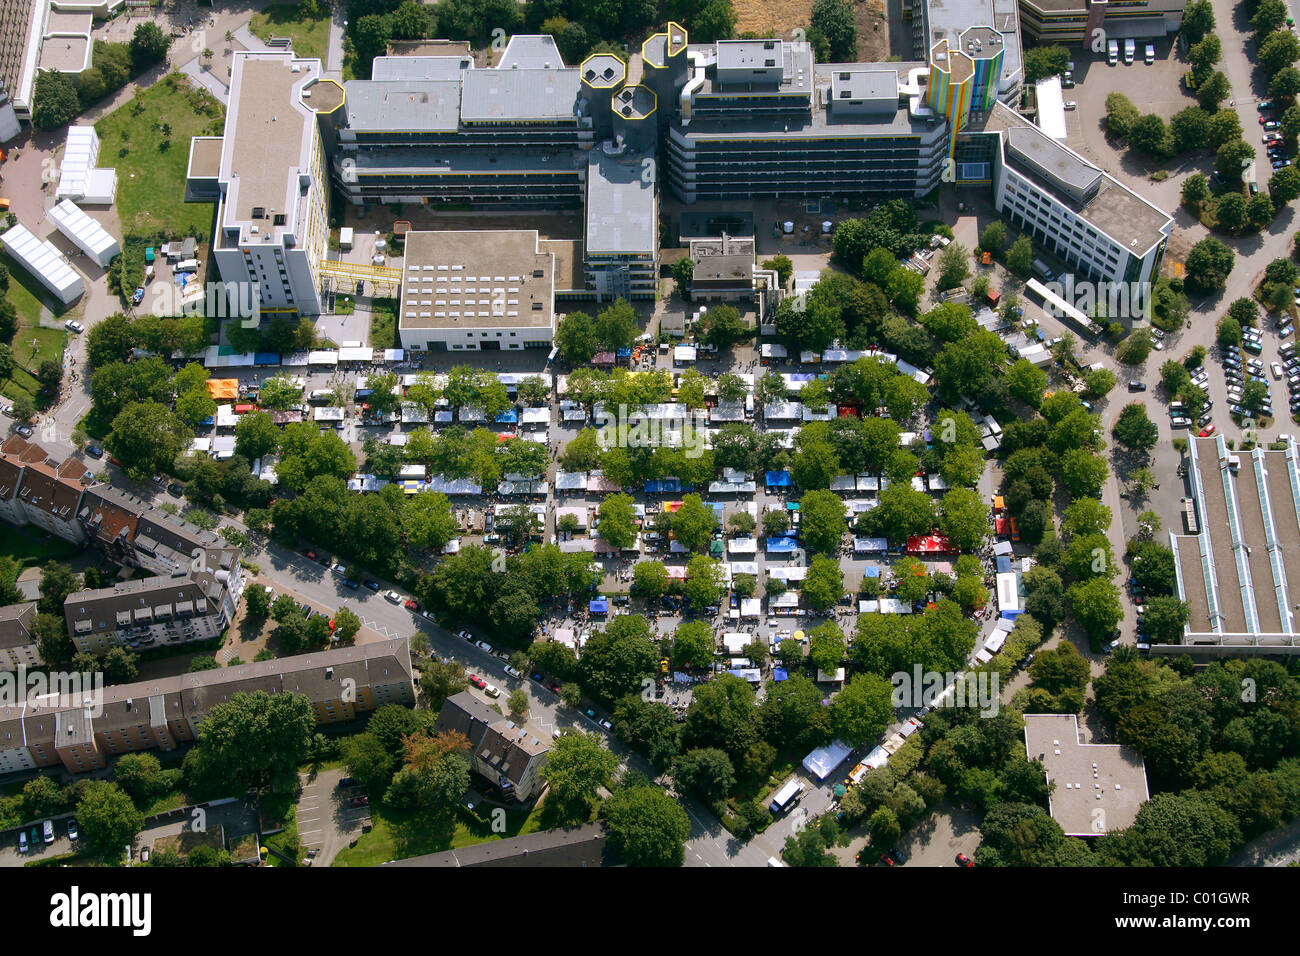 Vista aerea, il mercato delle pulci, Essen University car park, Essen, la zona della Ruhr, Renania settentrionale-Vestfalia, Germania, Europa Foto Stock